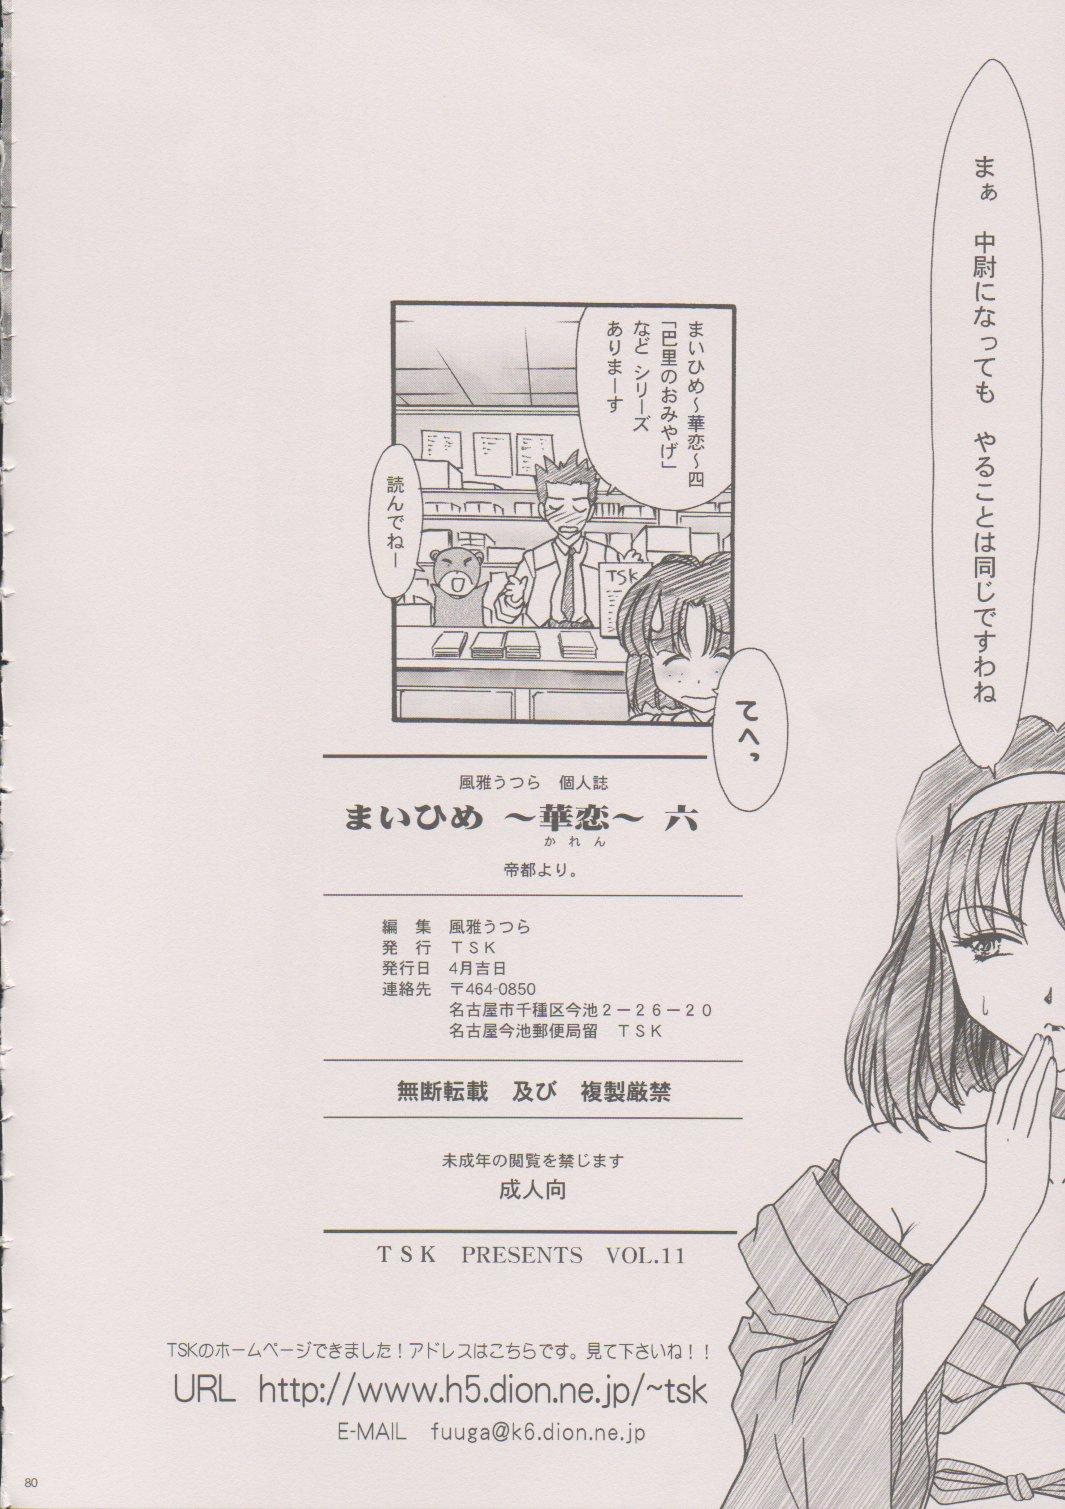 [TSK (Fuuga Utsura)] Maihime ~Karen~ 6 Teito Yori. (Sakura Wars) 78